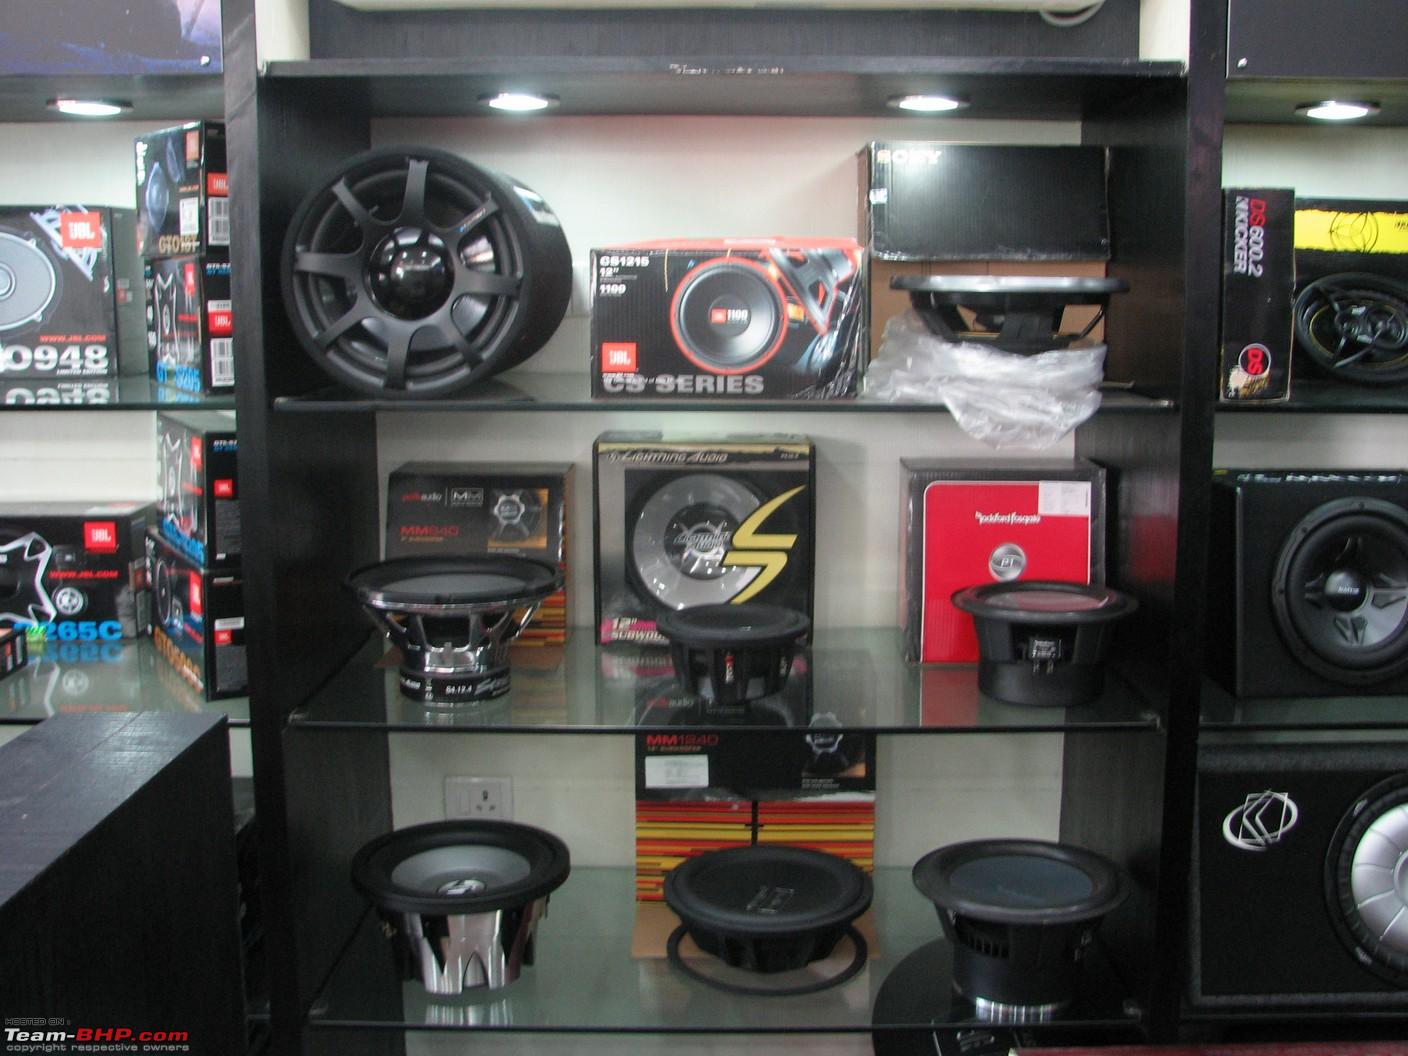 Team-BHP - Car Accessories : Privilege Moto Mall (Chennai)